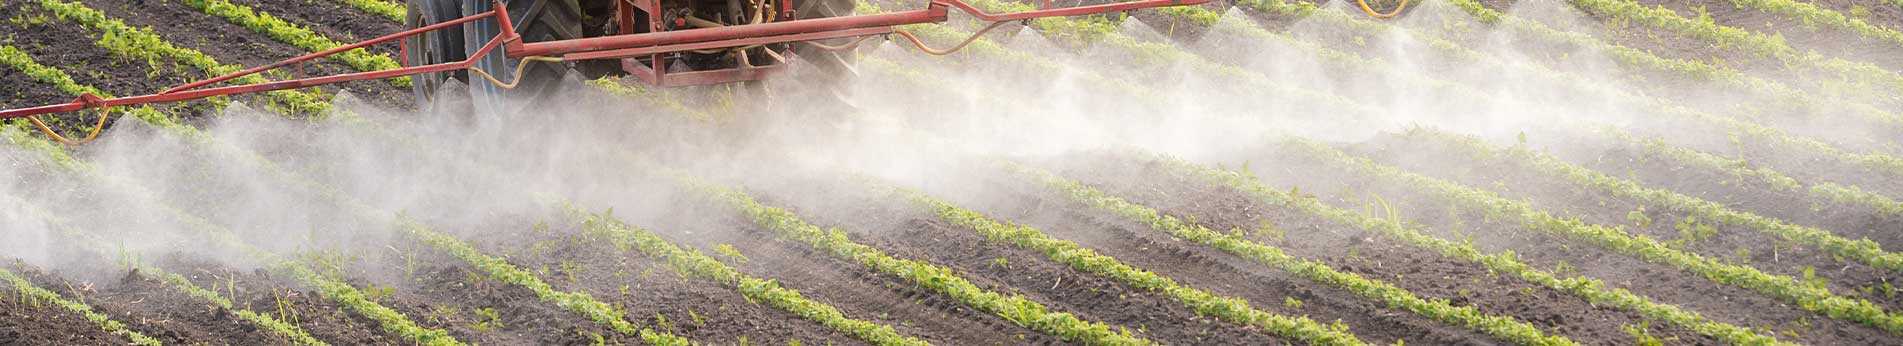 Tratamientos fumigación y herbicida – Equipos para tractor